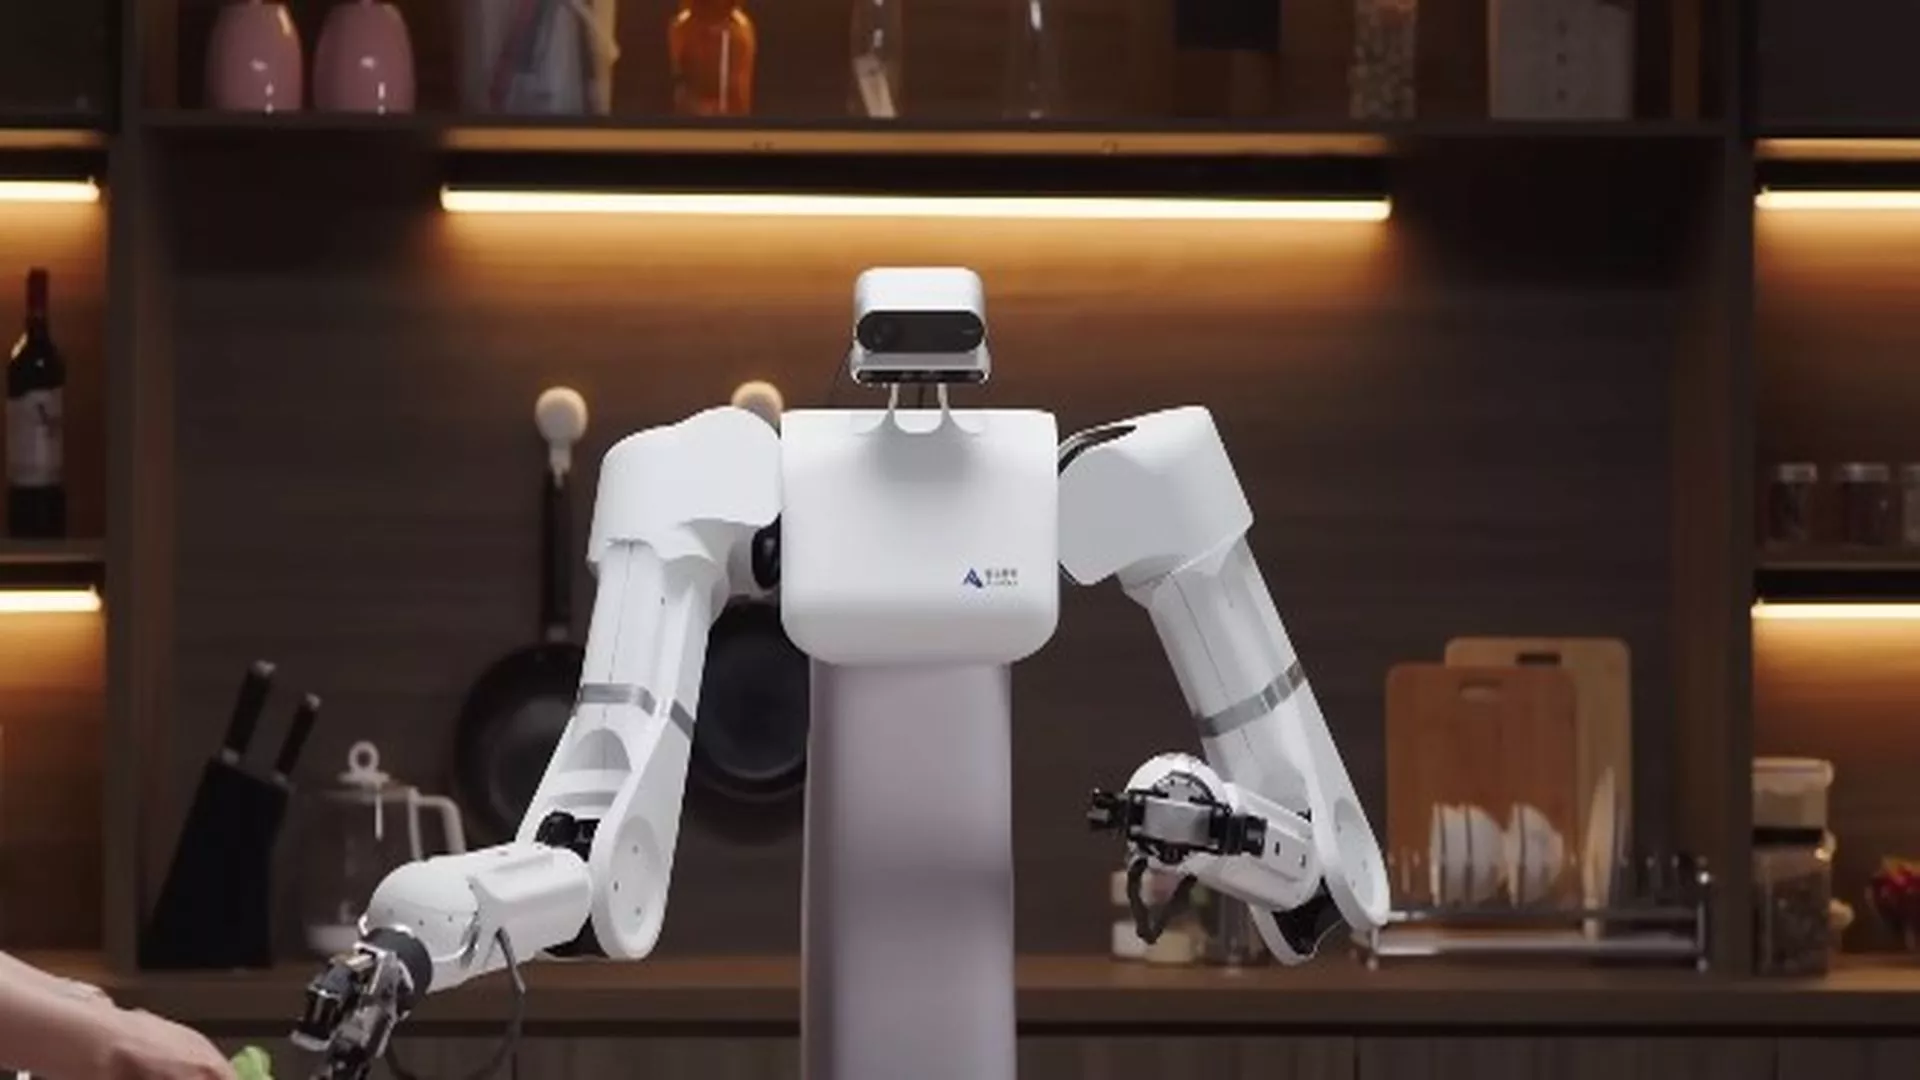 Presentan a Astribot S1 un robot humanoide con IA ultra veloz